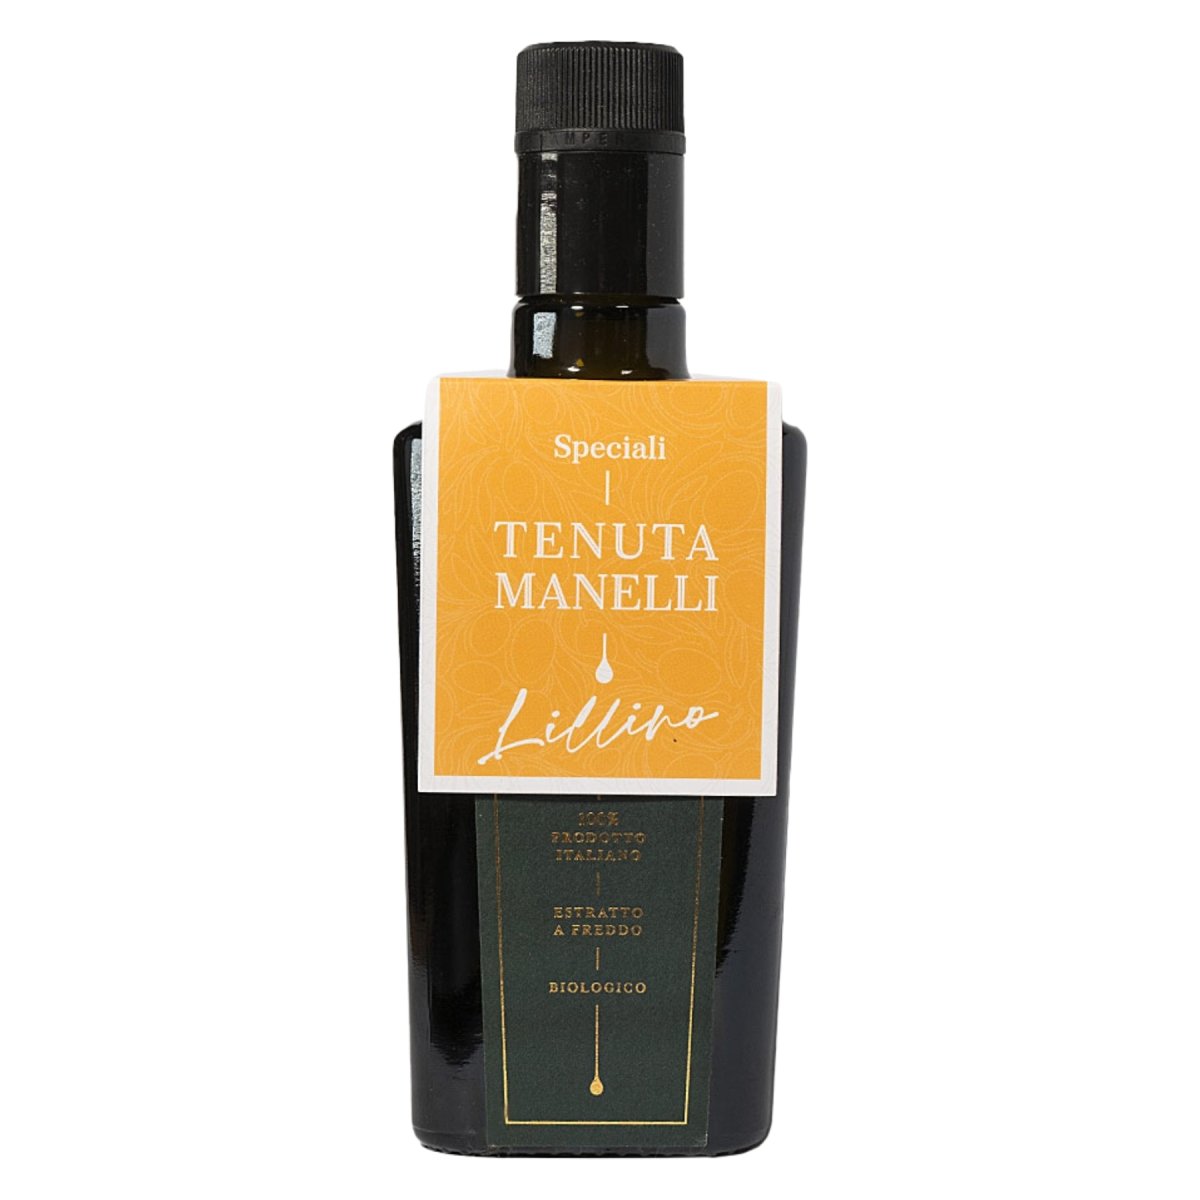 oliwa z oliwek extra virgin - Lillino - Tenuta Manelli - Slow Italy